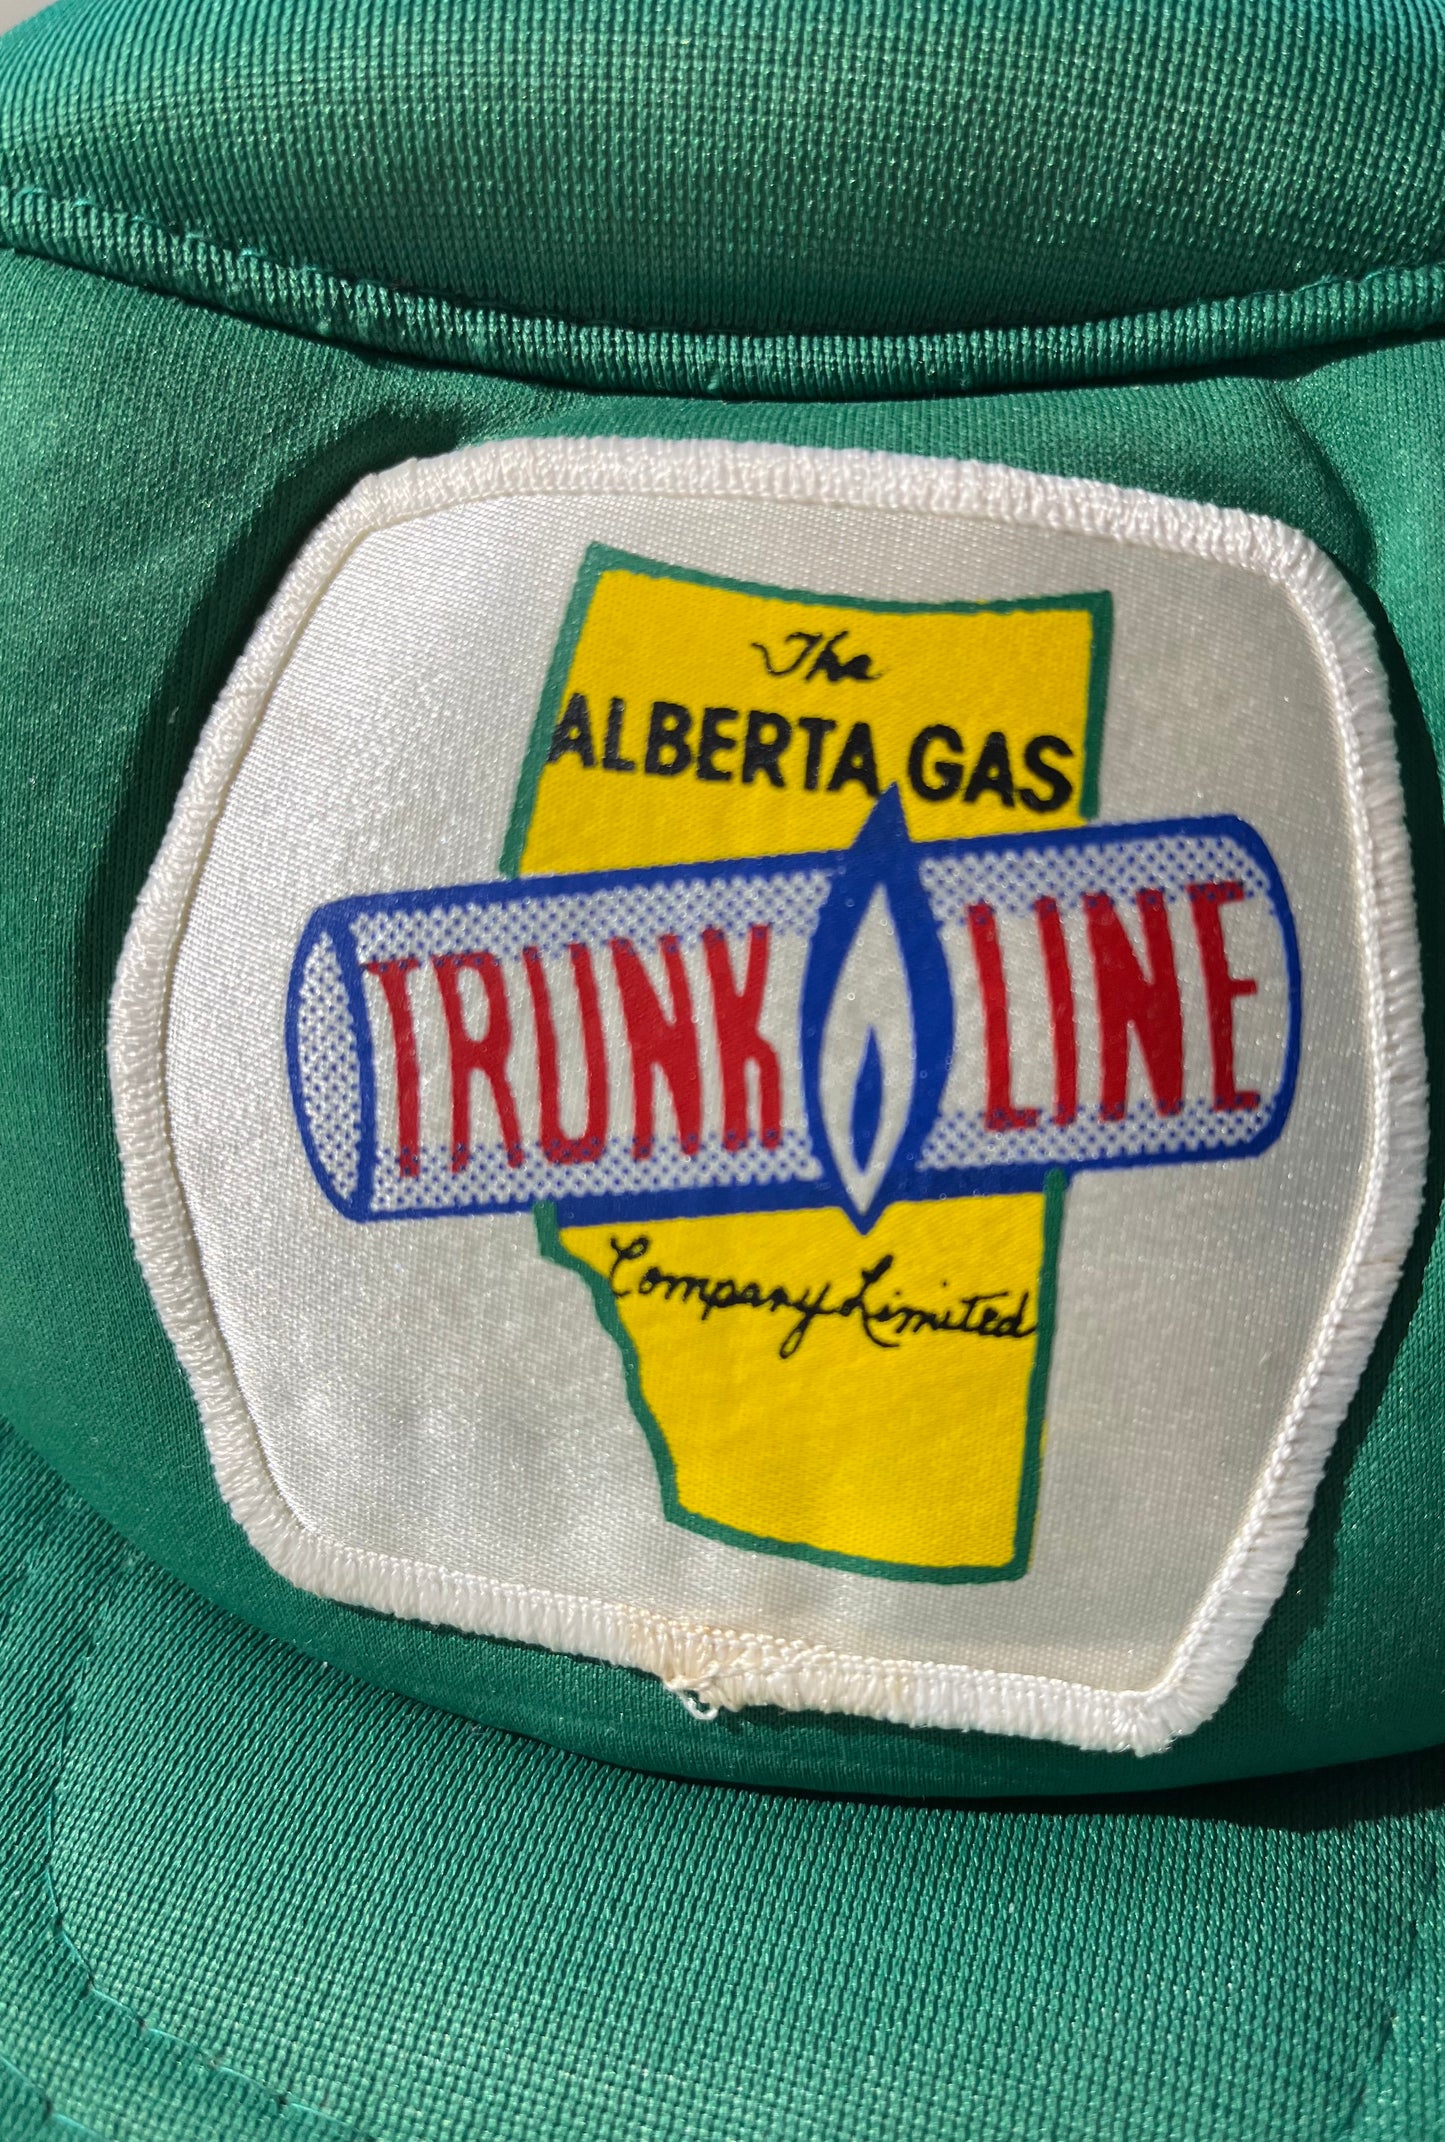 Vintage Snapback Hat Trunk Line Gas